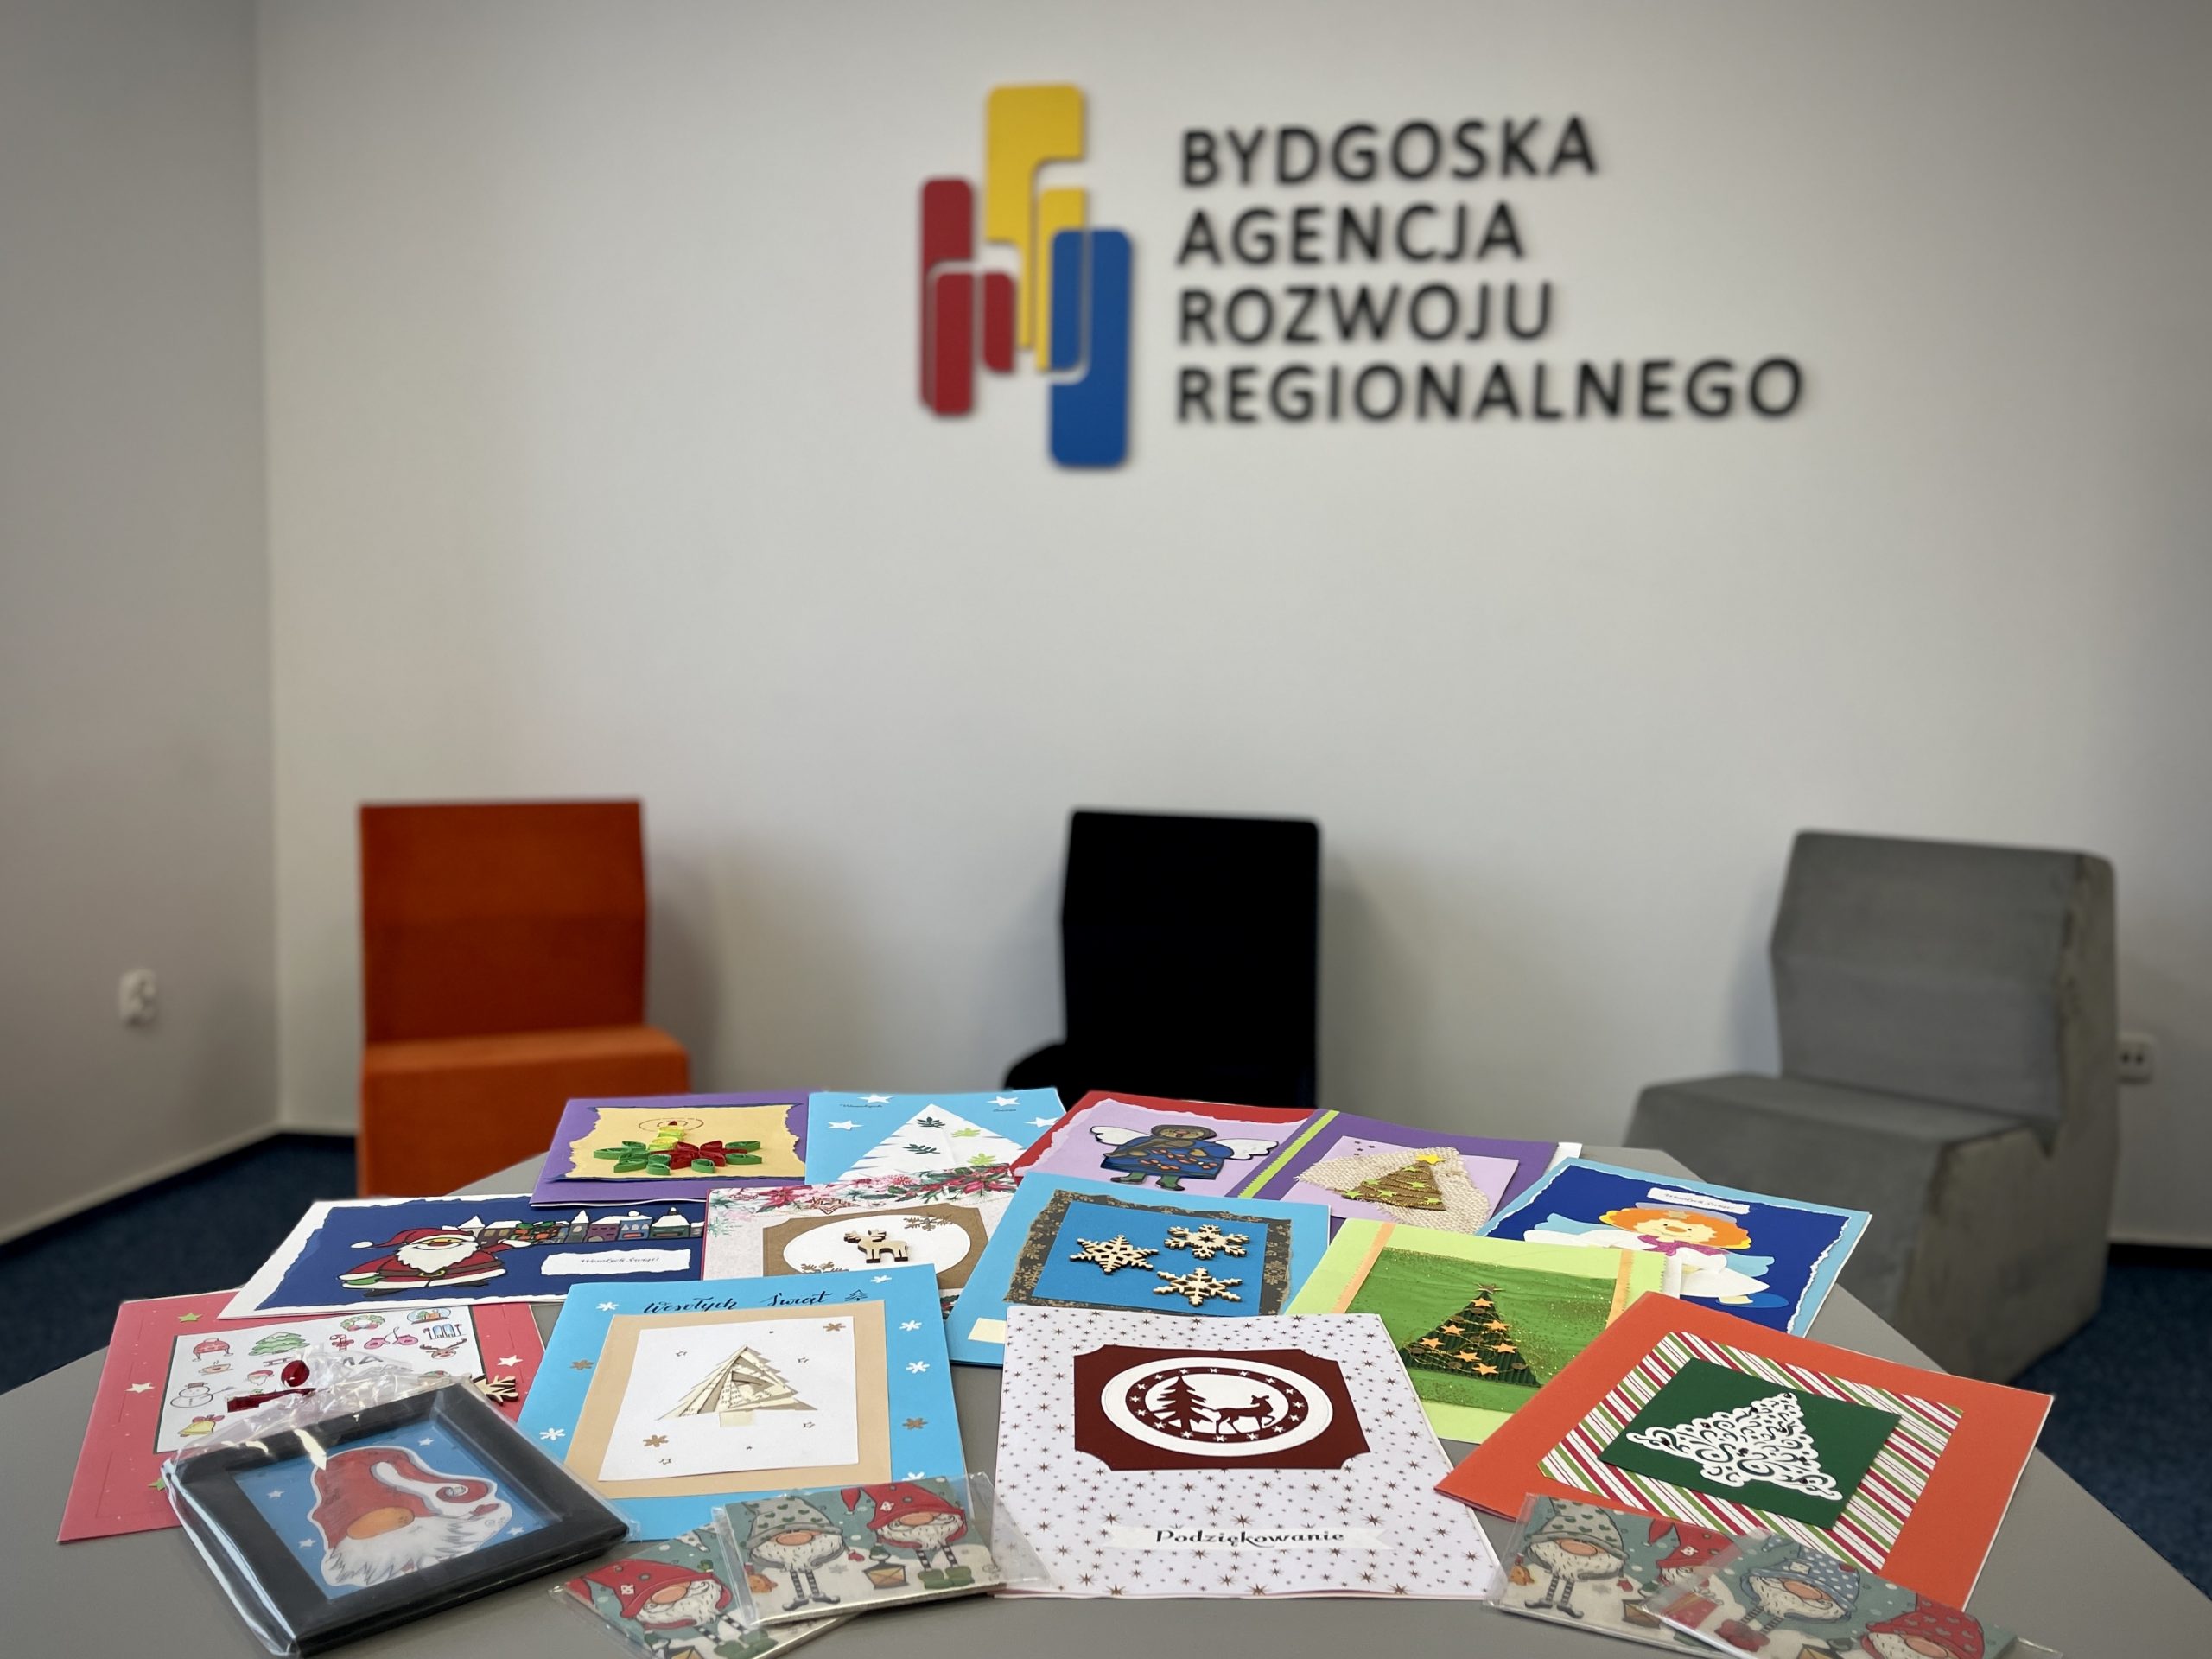 Kolorowe kartki świąteczne wykonane przez dzieci leżą na stole, w tle logo Bydgoskiej Agencji Rozwoju Regionalnego